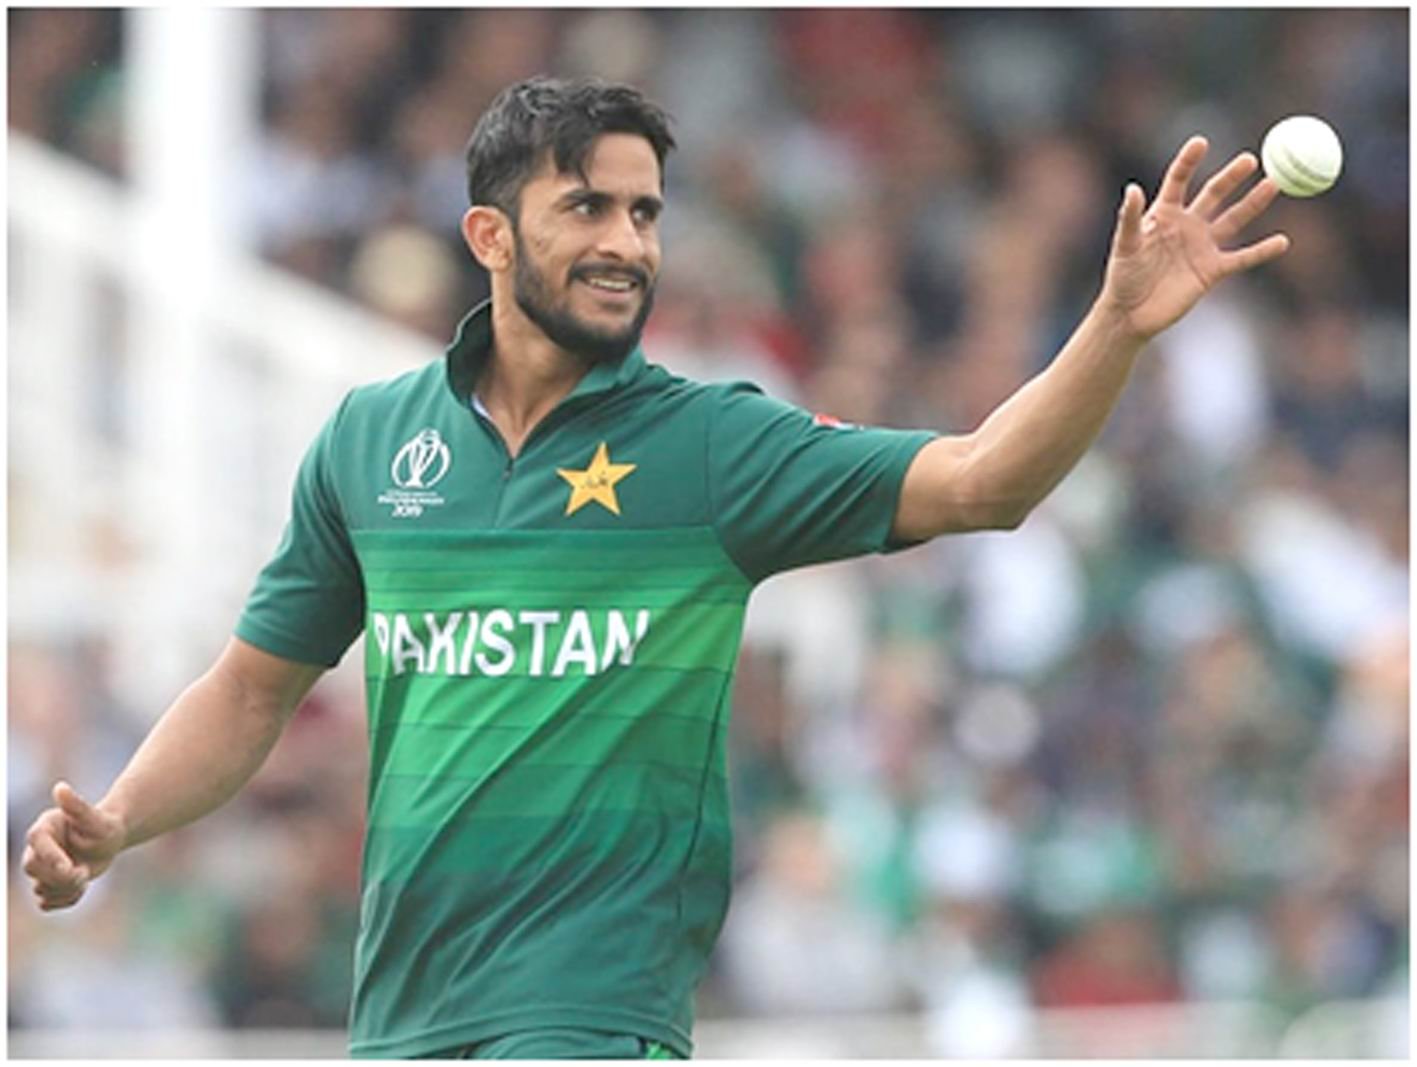 પાકિસ્તાની ક્રિકેટર હસનઅલી હરિયાણાની શામિયા આરઝૂ સાથે નિકાહ કરશે